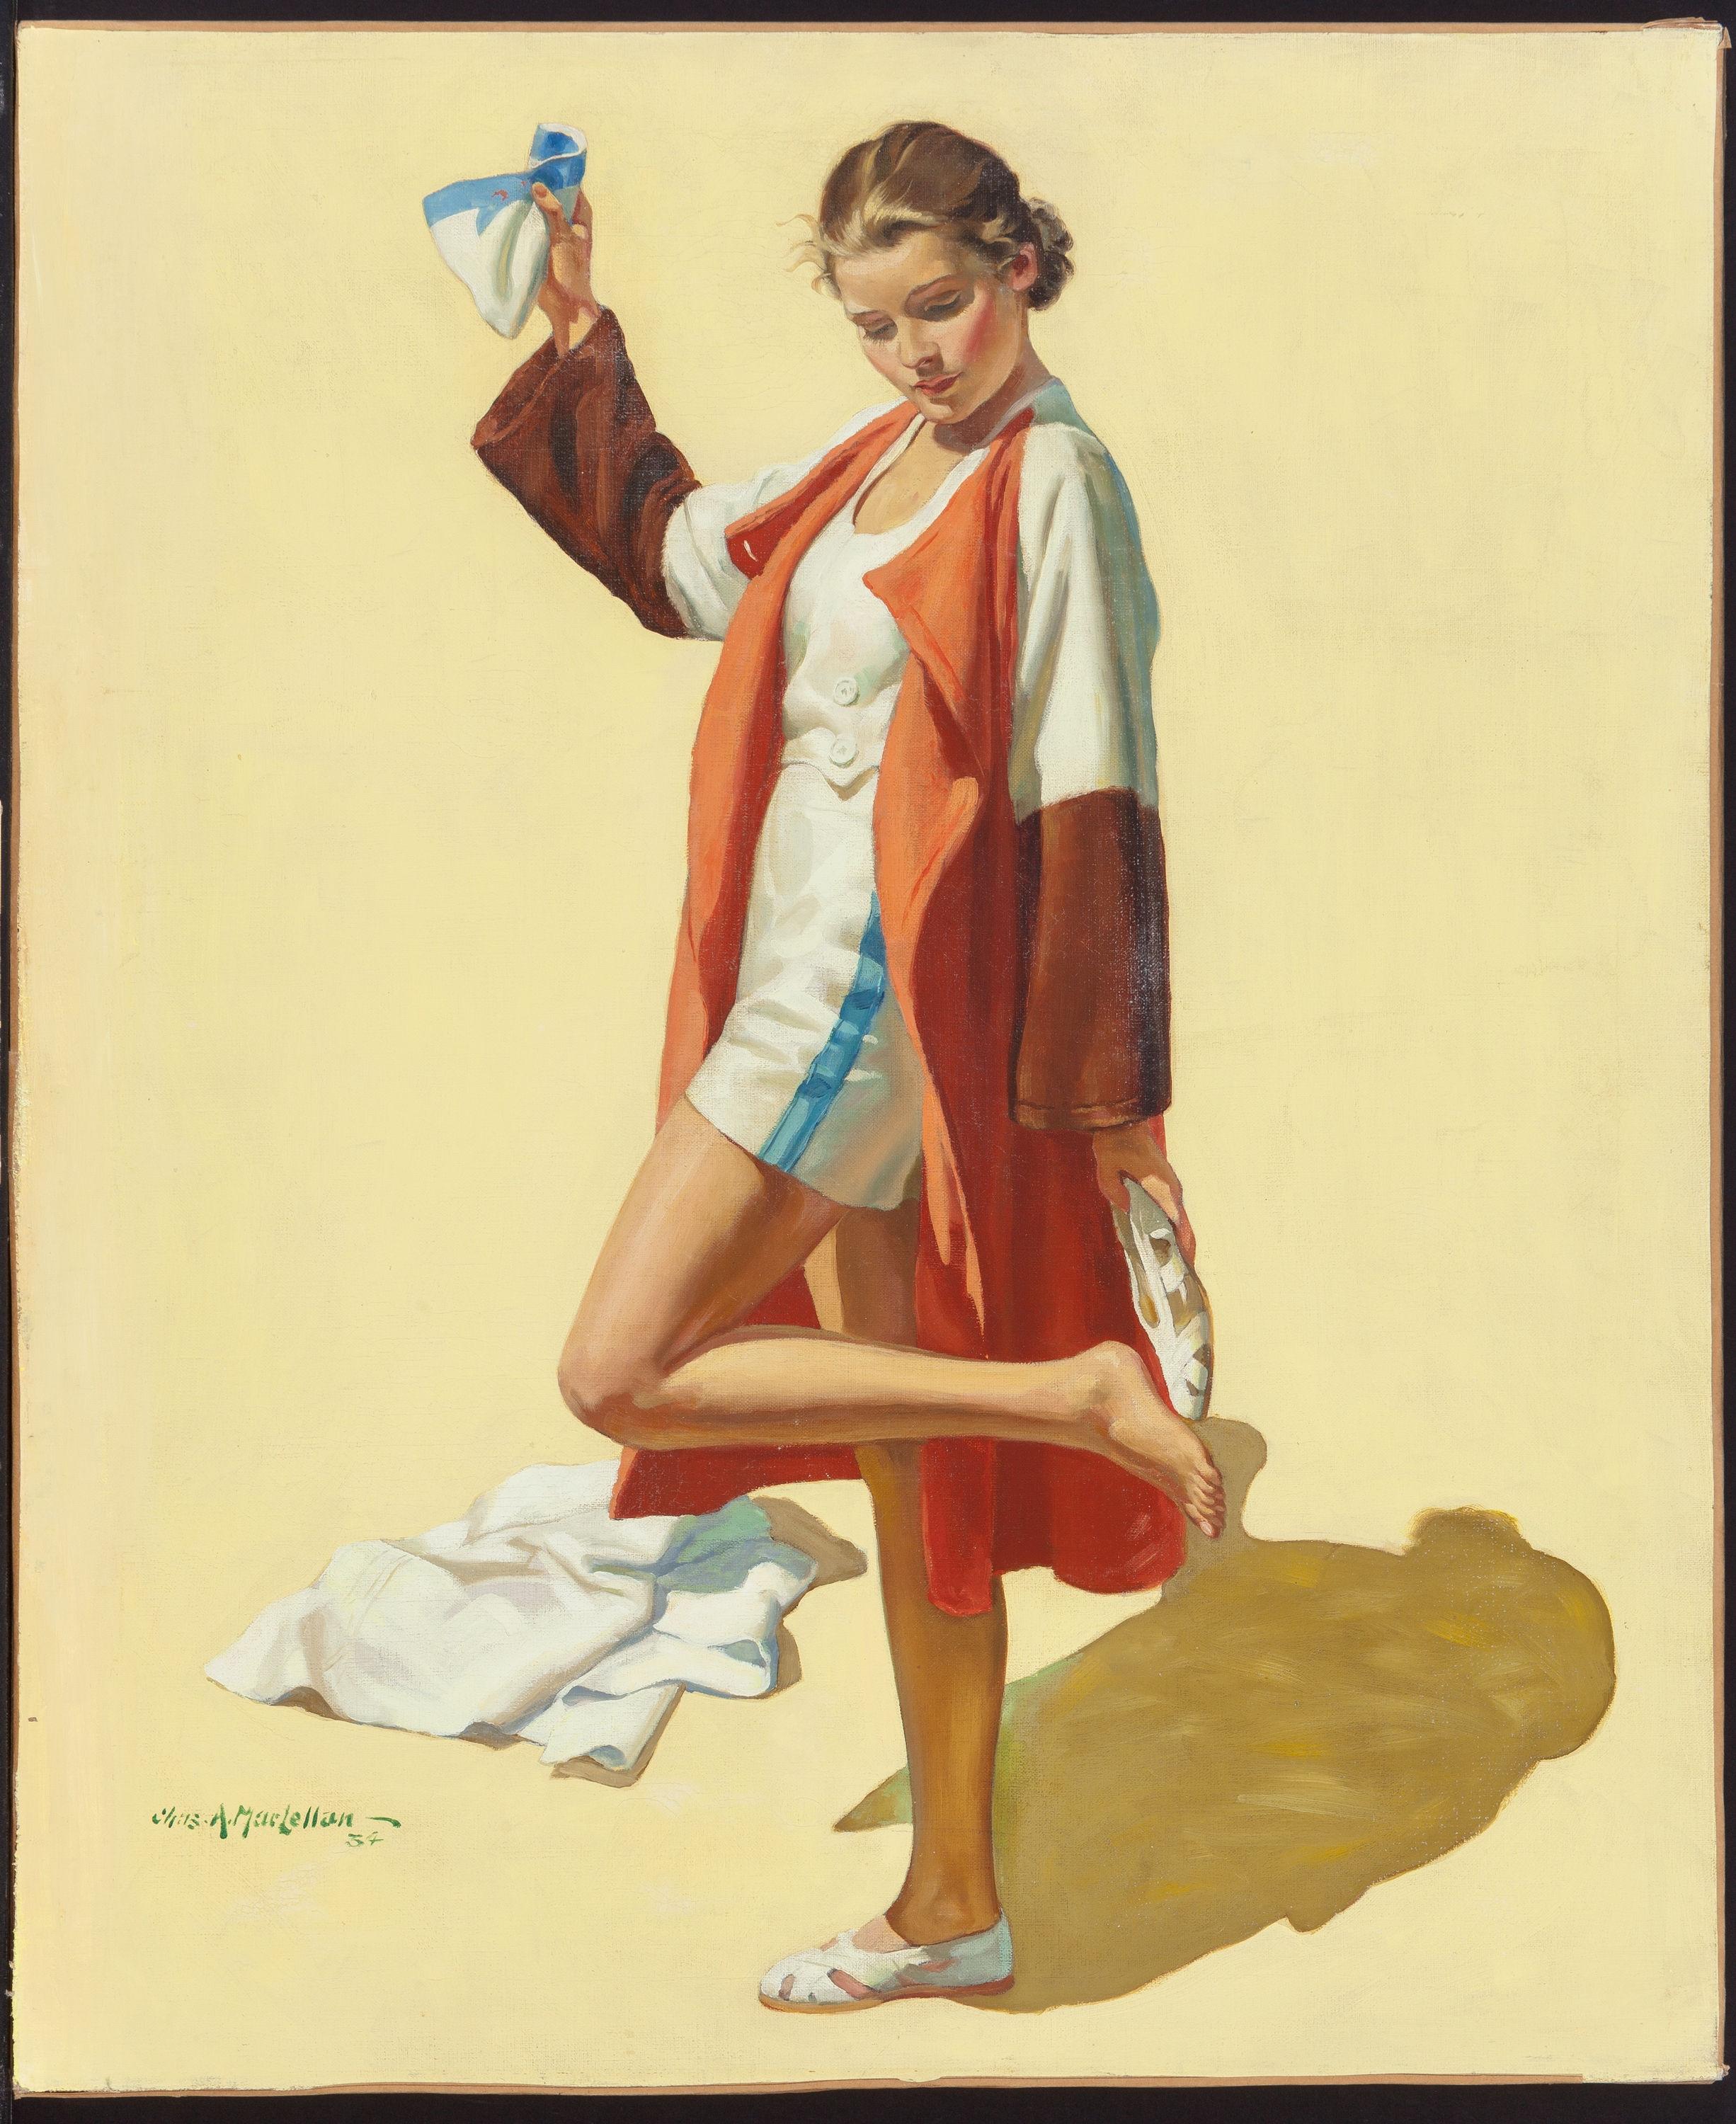 Slipping in ihre Schuhe – Painting von Charles MacLellan